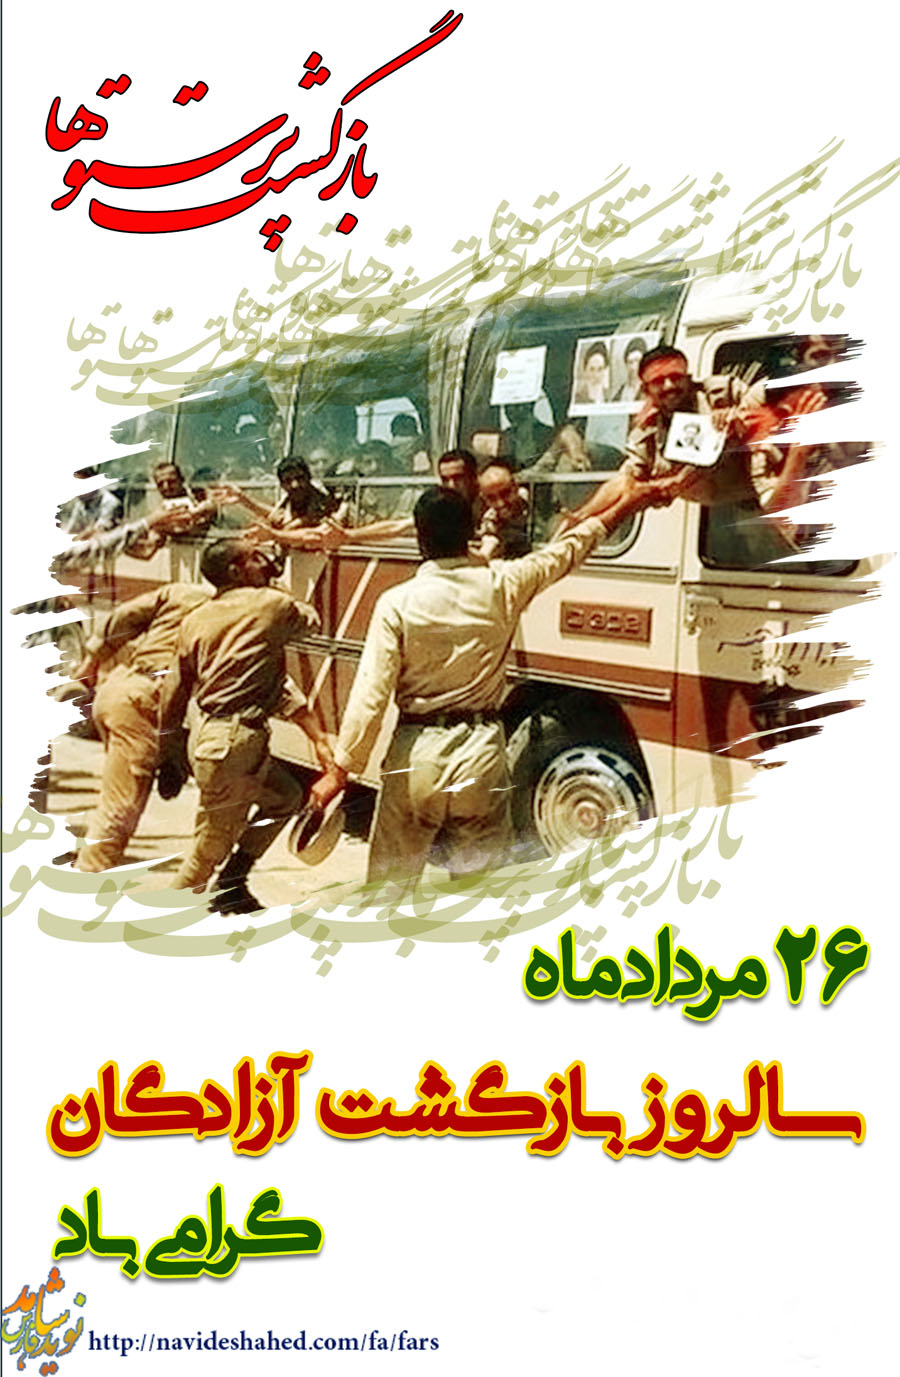 سالروز ورود آزادگان به میهن اسلامی گرامی باد / پوستر